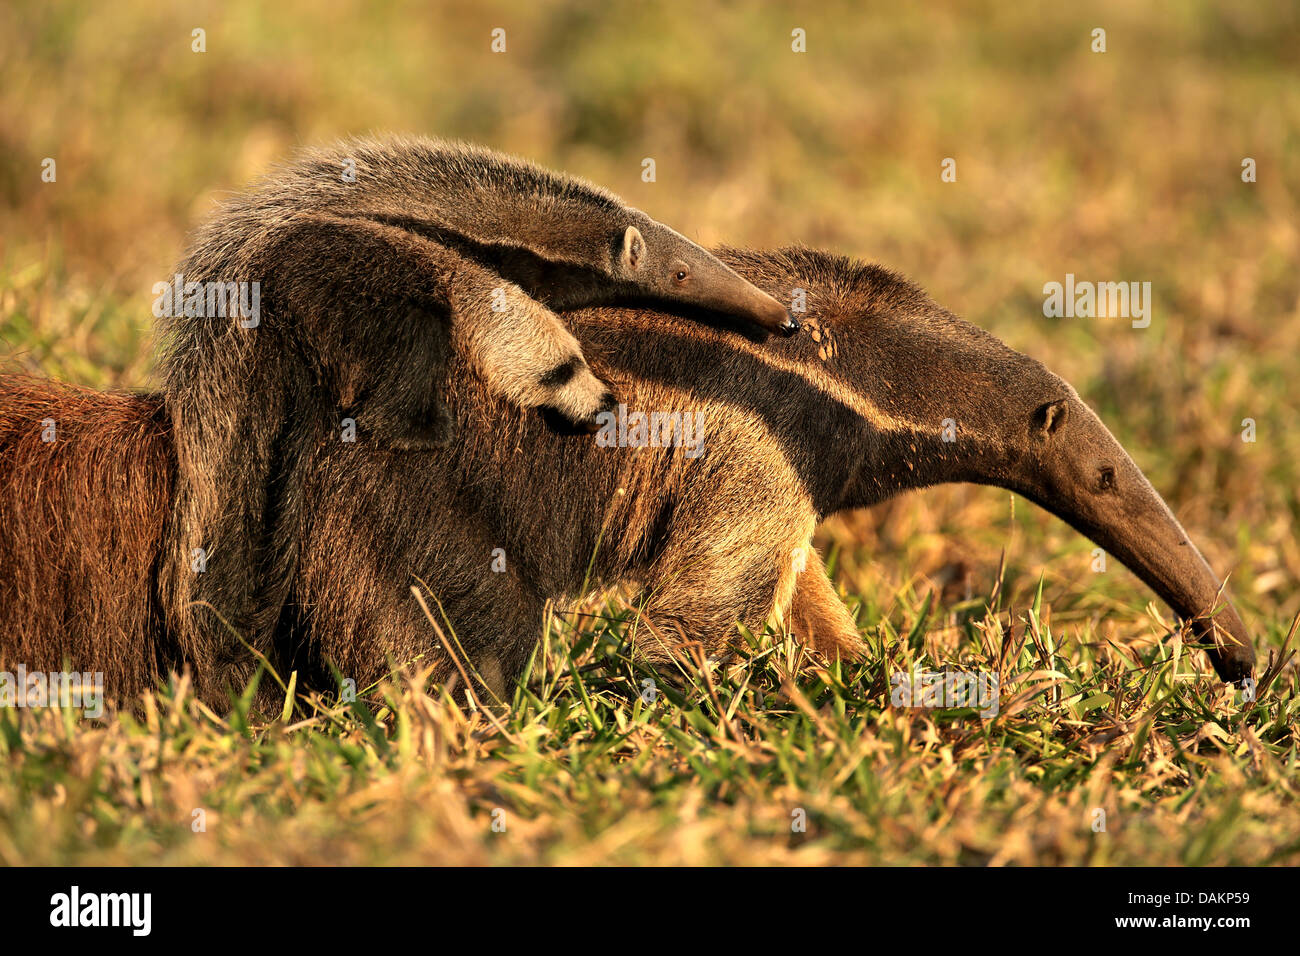 Fourmilier géant (Myrmecophaga tridactyla), femelle tamanoir sur son enfant sur le dos, au Brésil, Mato Grosso do Sul Banque D'Images